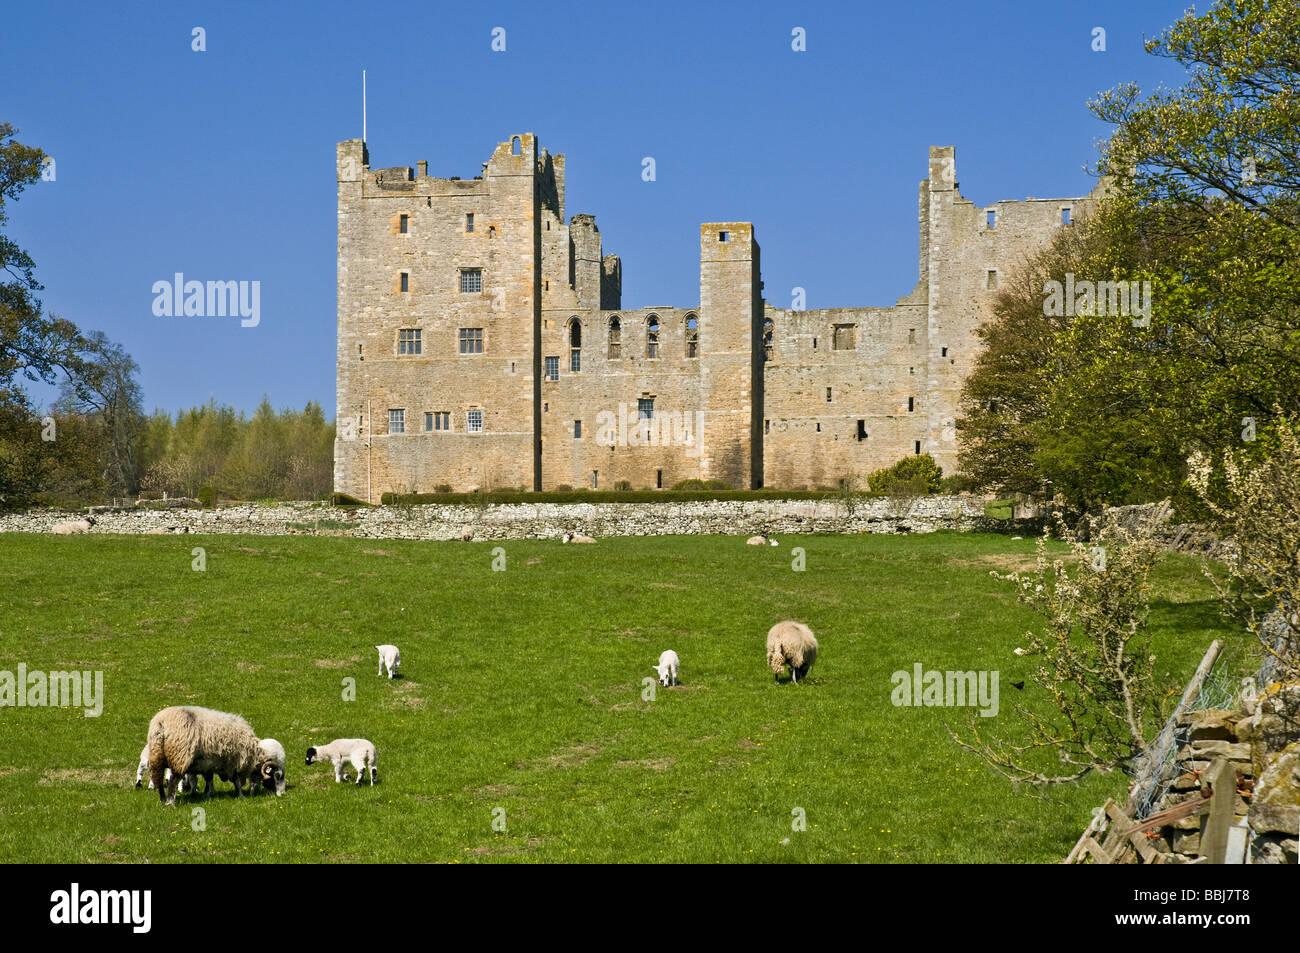 Dh CHÂTEAU BOLTON NORTH YORKSHIRE château médiéval et mouton Wensleydale champ Yorkshire Dales National Park Banque D'Images